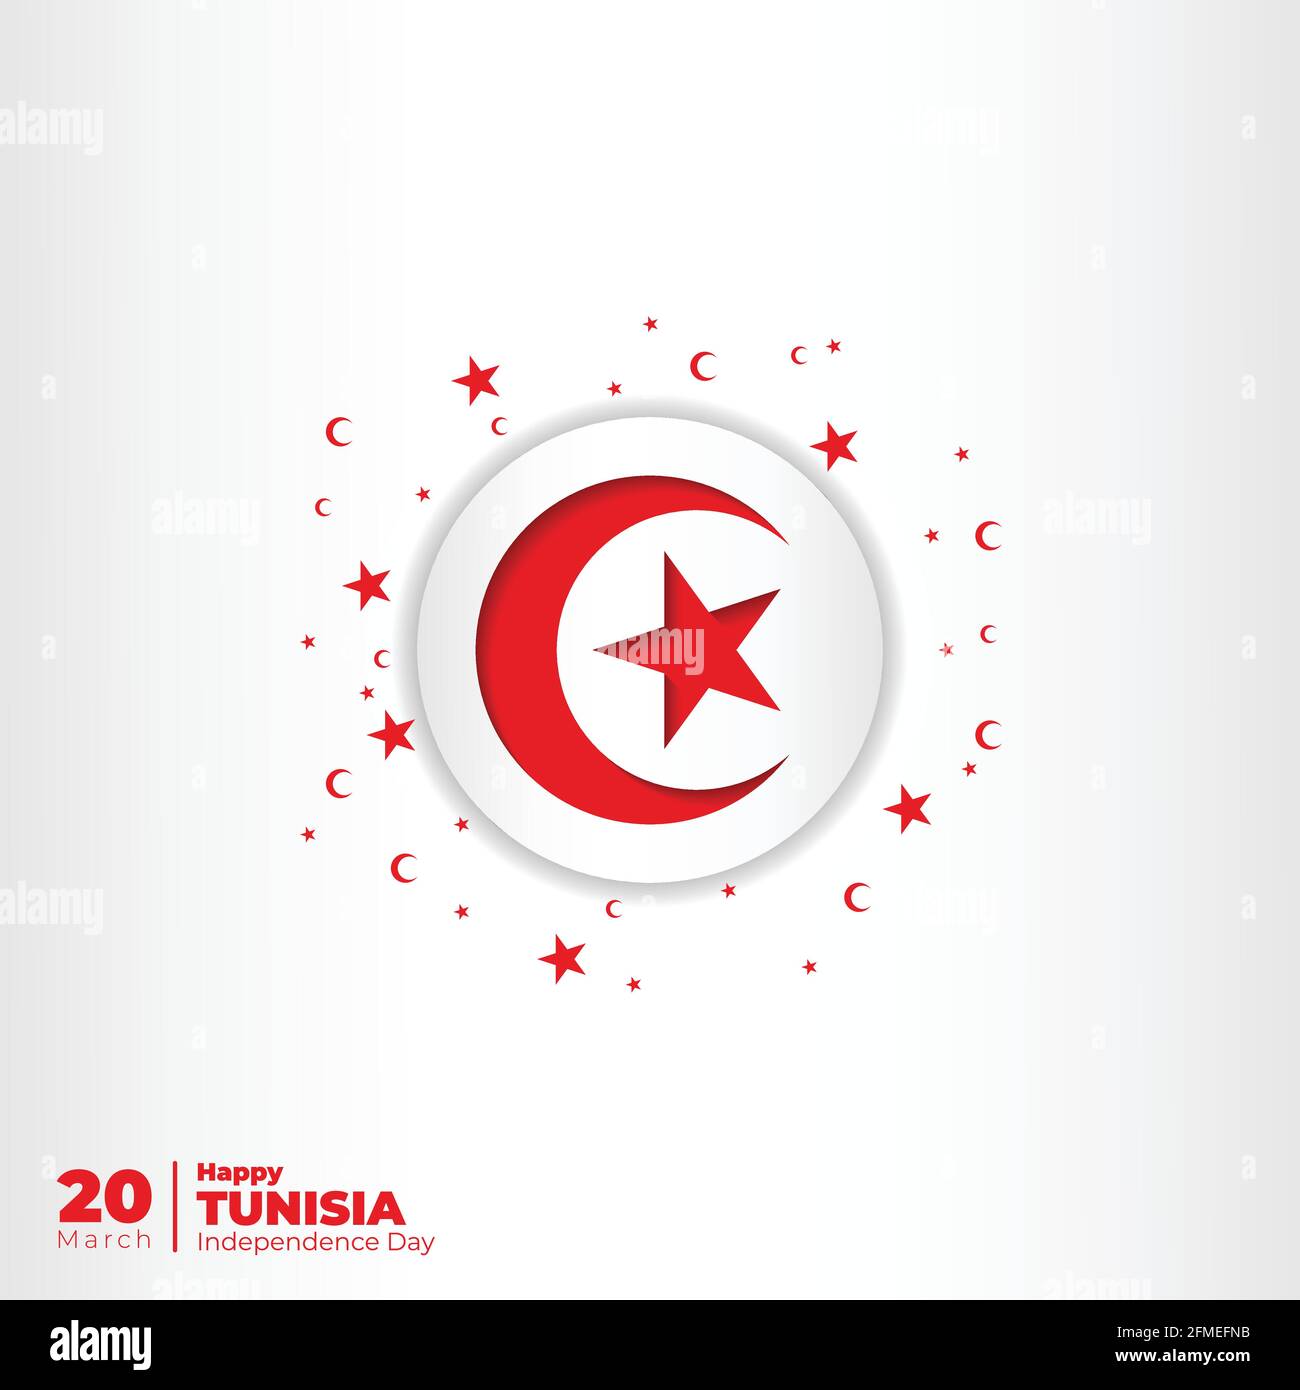 Weißer Hintergrund mit tunesien Emblem Flagge Design. Gute Vorlage für tunesien Unabhängigkeitstag Design. Stock Vektor